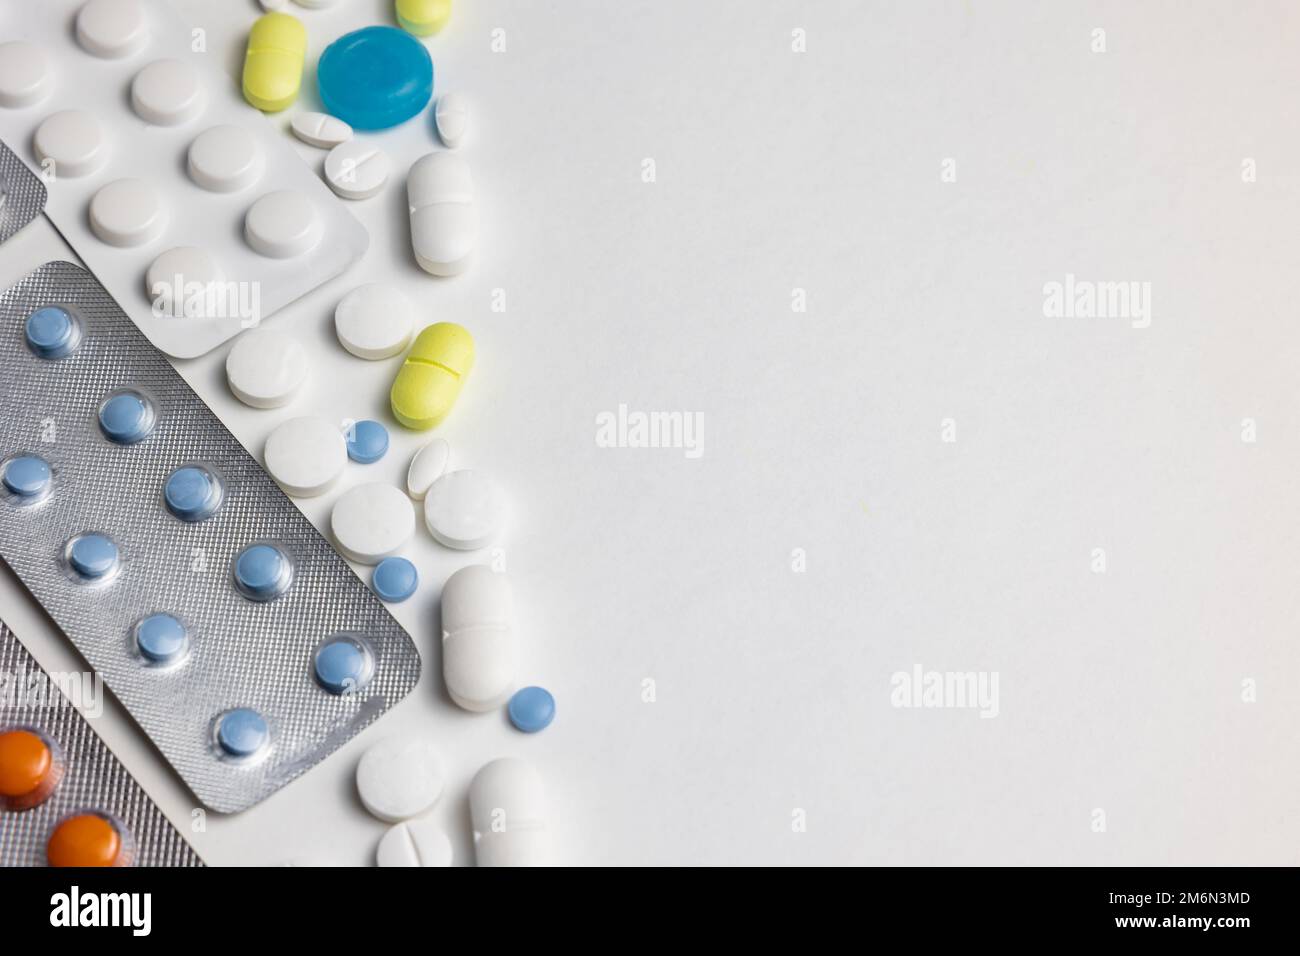 Kapseln oder Tabletten oder Pillen isoliert auf weißem Hintergrund. Gesundheitsfürsorge oder Medizin oder Pharmakologie Konzeptfoto. Stockfoto